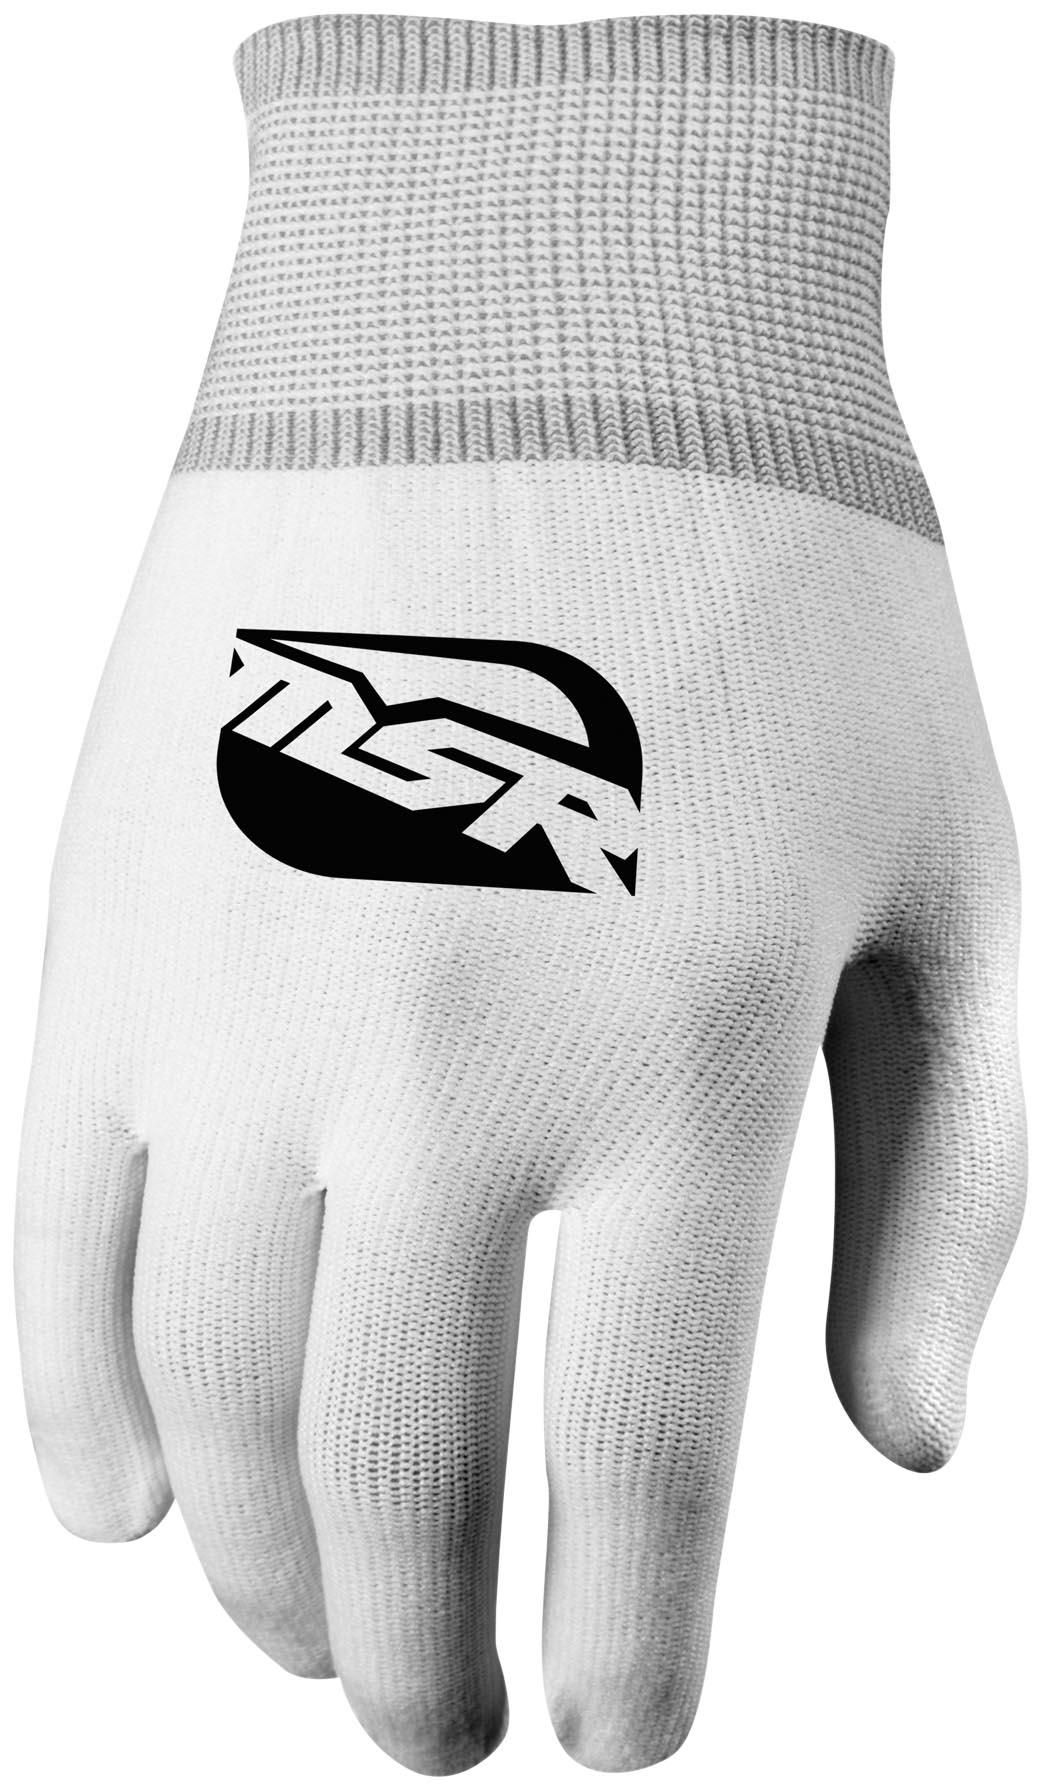 45RP-MSR-349089 Glove Liner - Full Finger